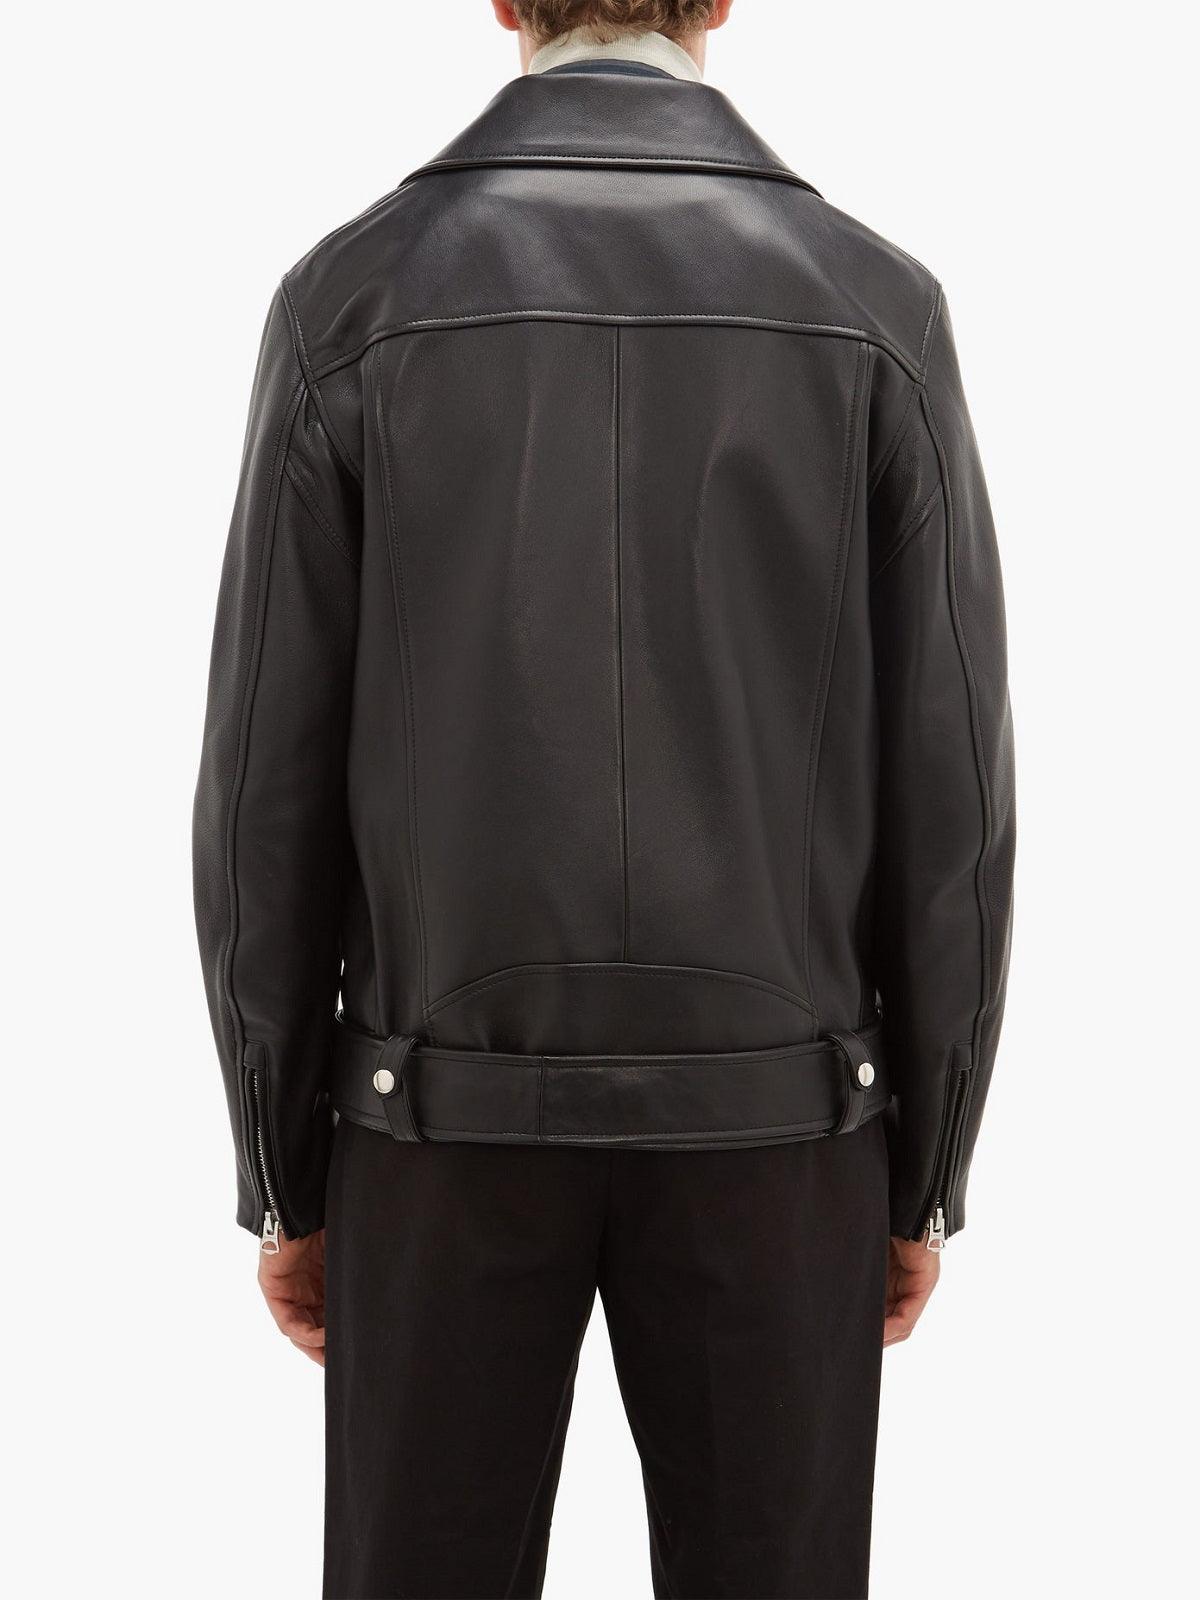 Classic Black Biker Leather Jacket For Men